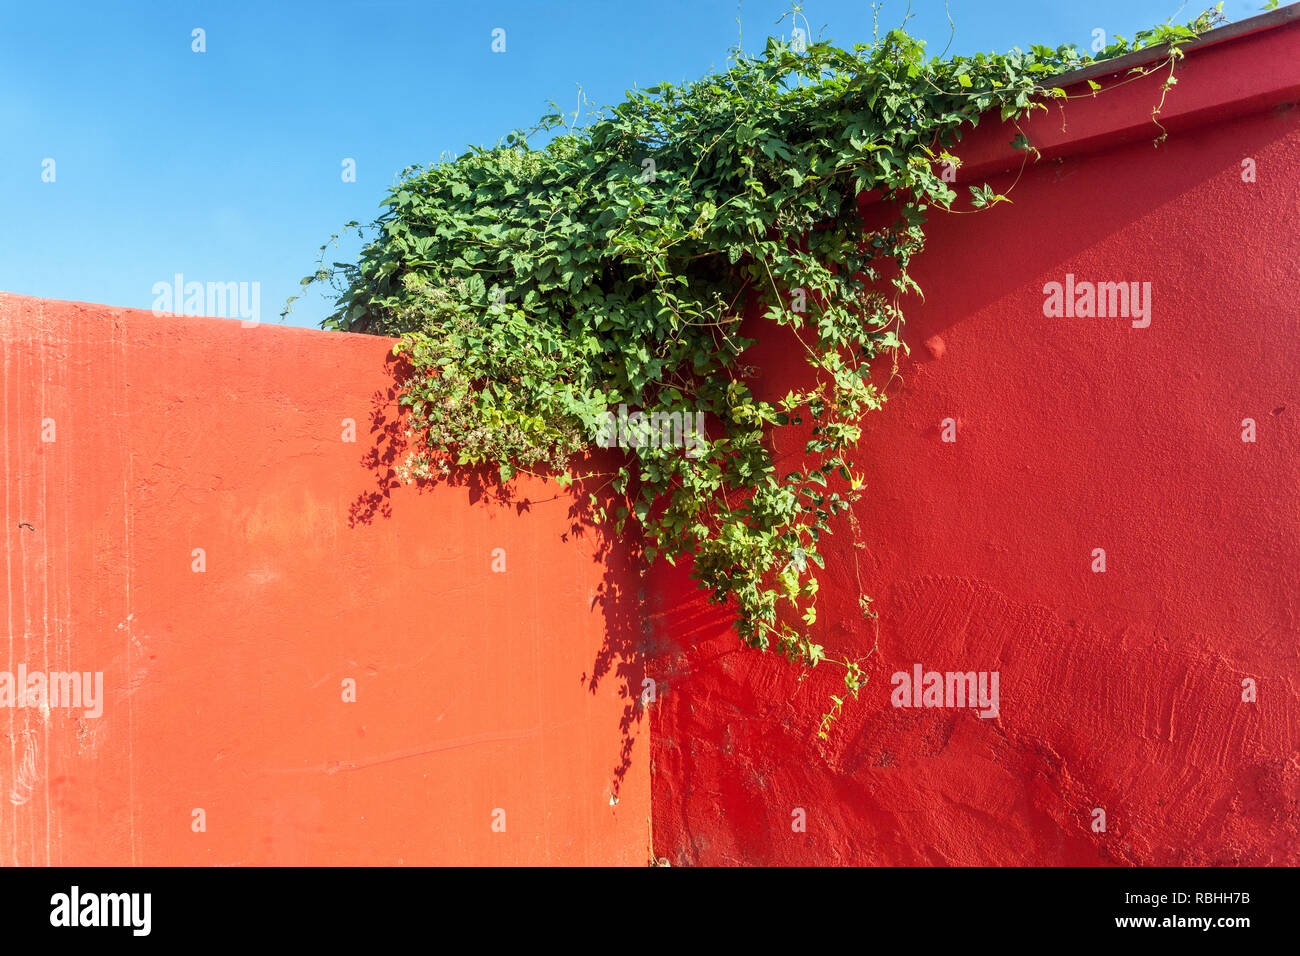 Farbkontrast, rote Wand, blauer Himmel und grüne Kletterpflanze Hedera Helix Wandpflanze Stockfoto